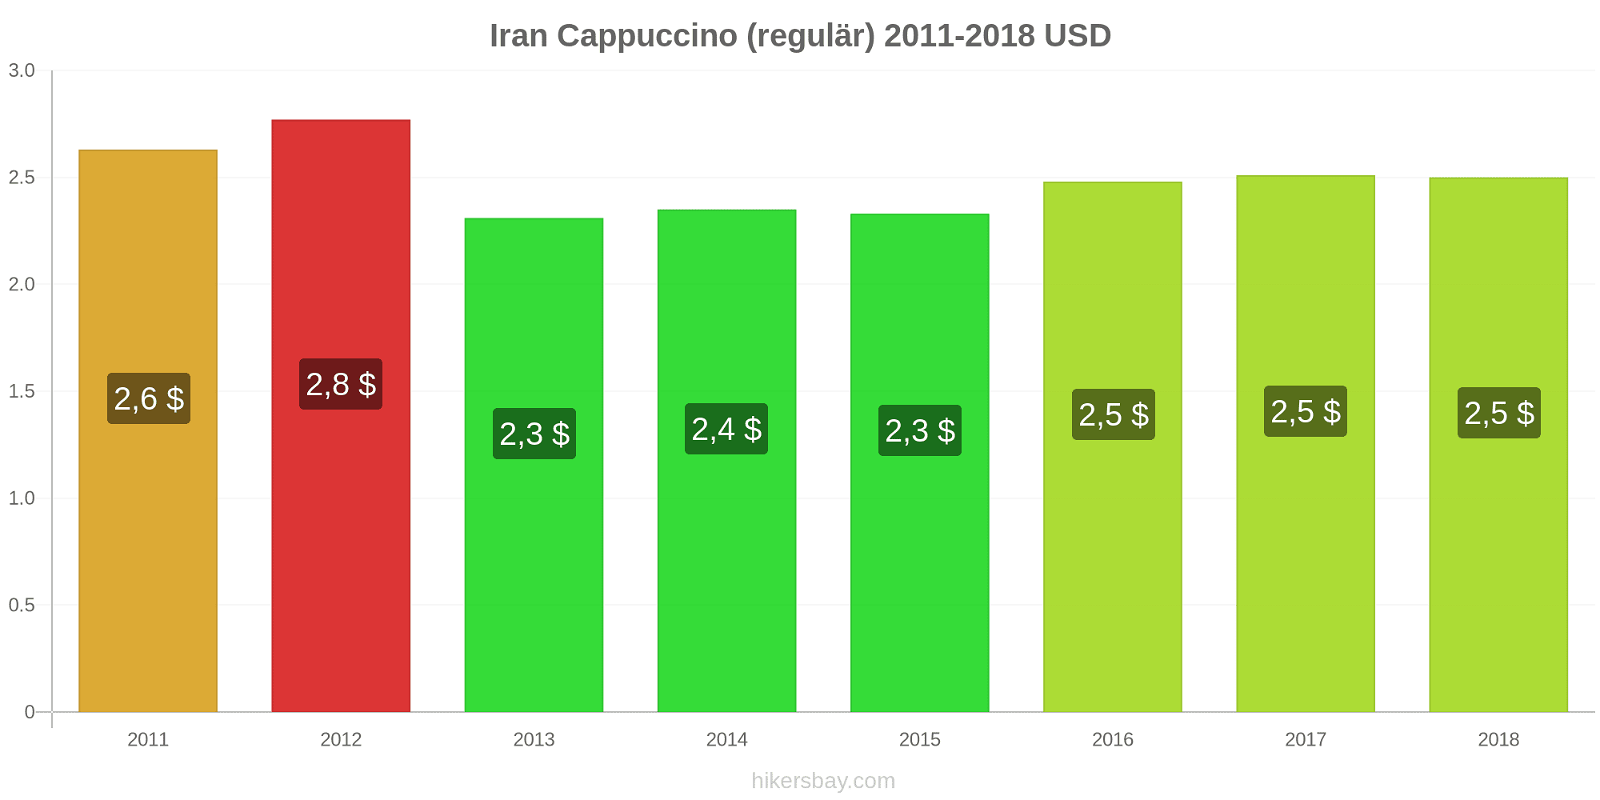 Iran Preisänderungen Cappuccino hikersbay.com